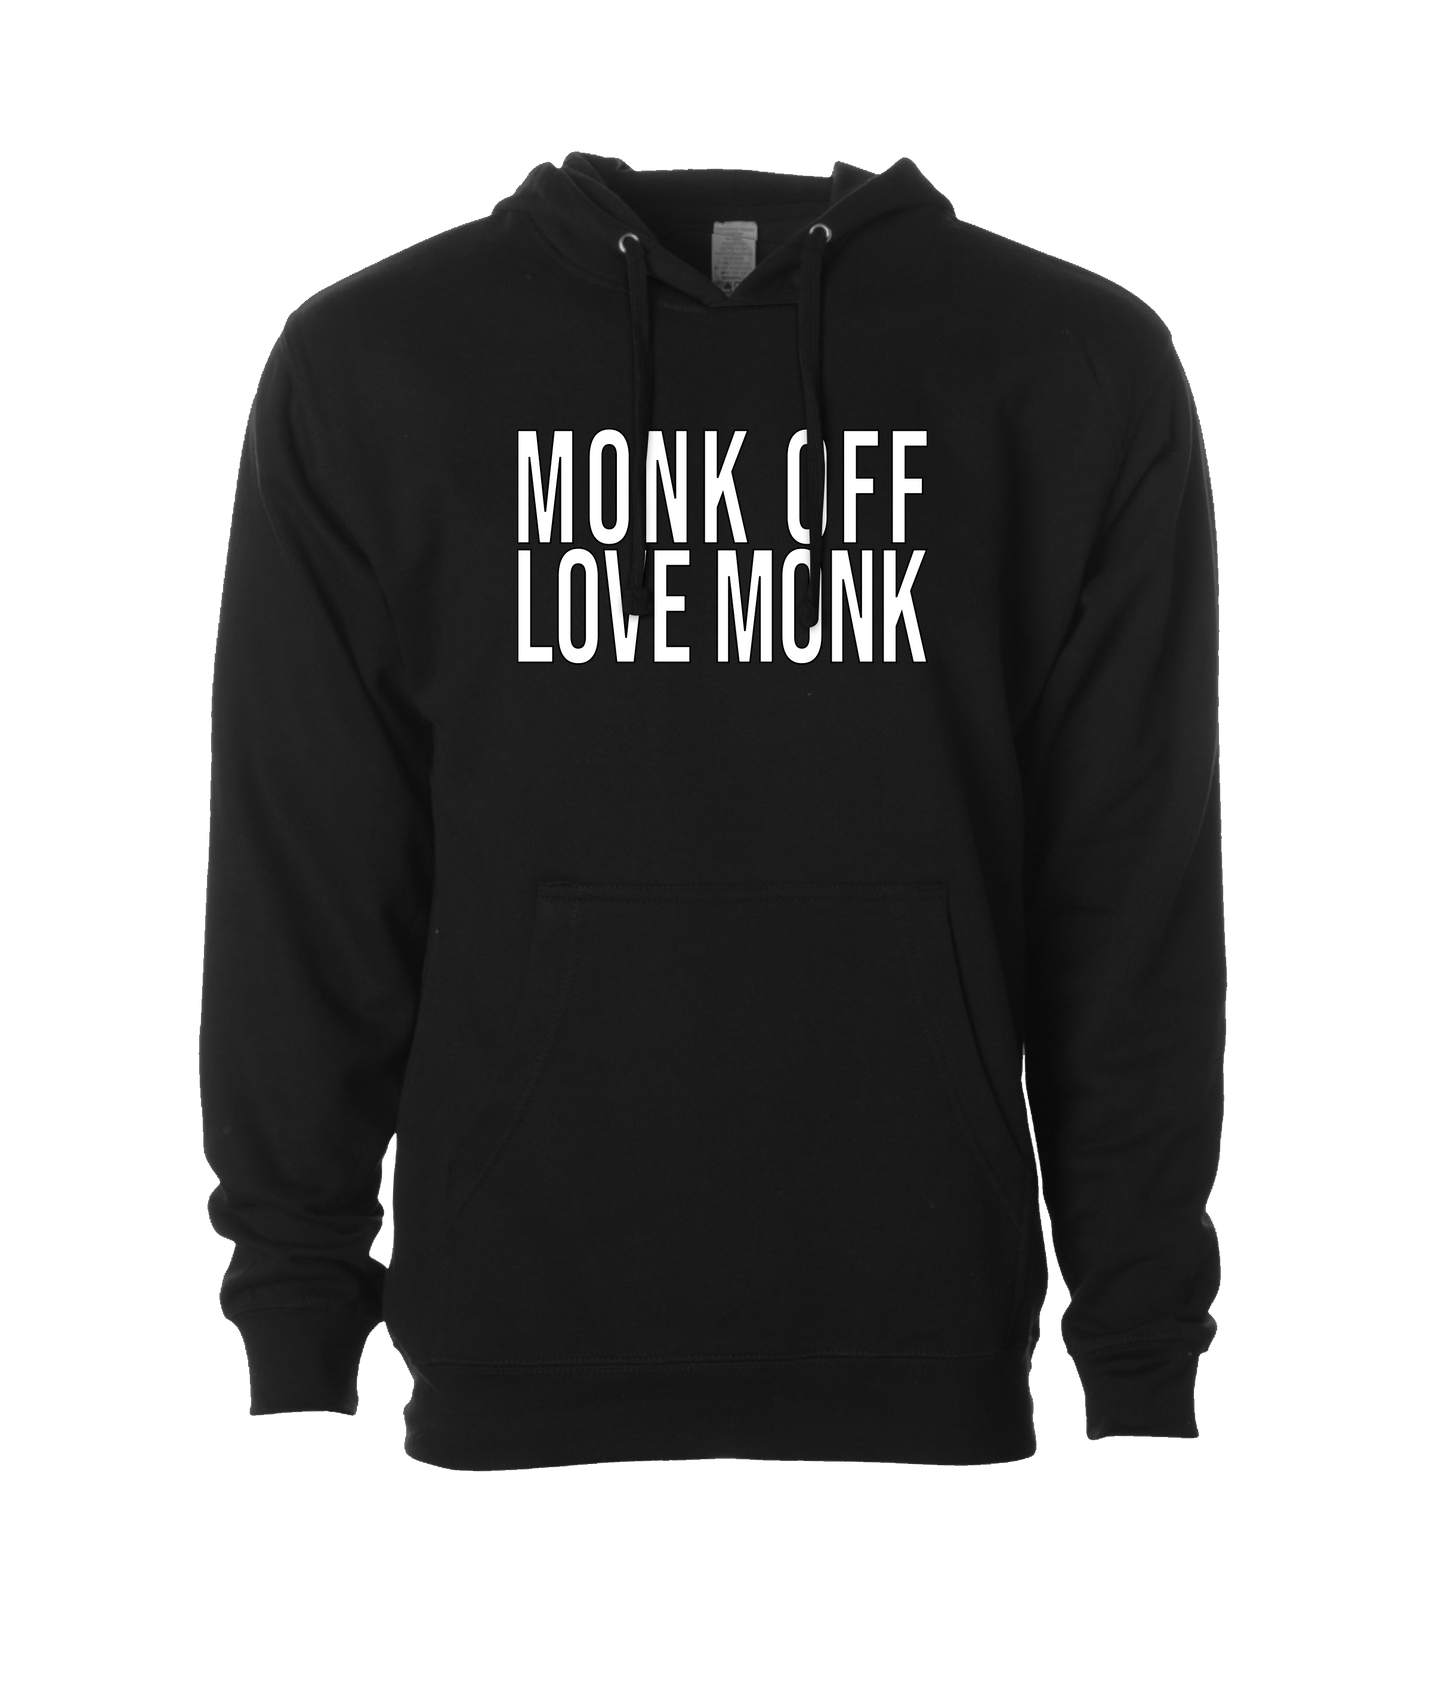 Monk Melville - Monk Off Love Monk - Black Hoodie